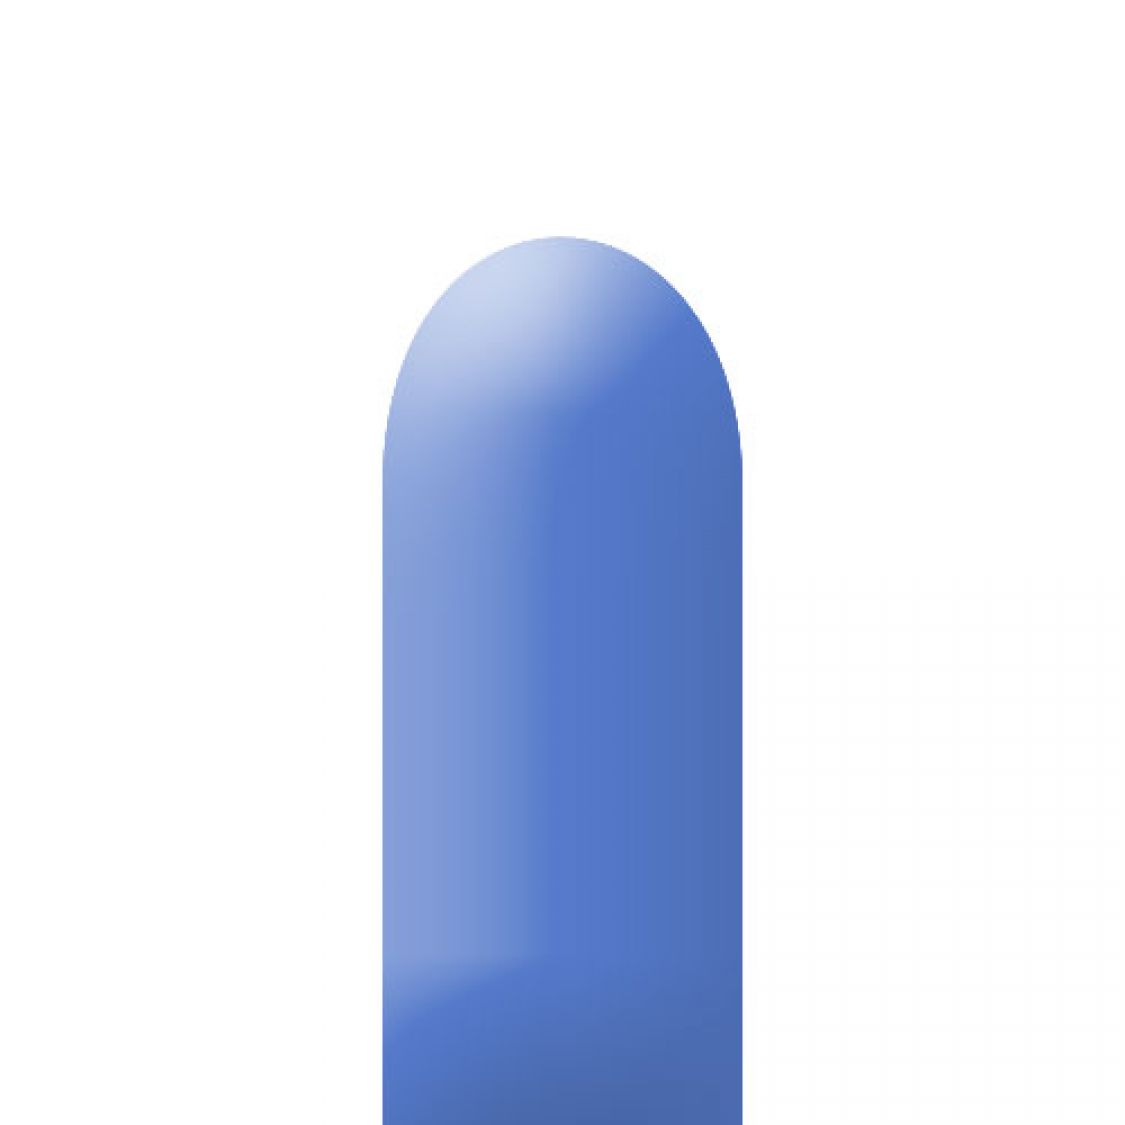 Ballons à Sculpter Bleu Pervenche (Periwinkle Blue)